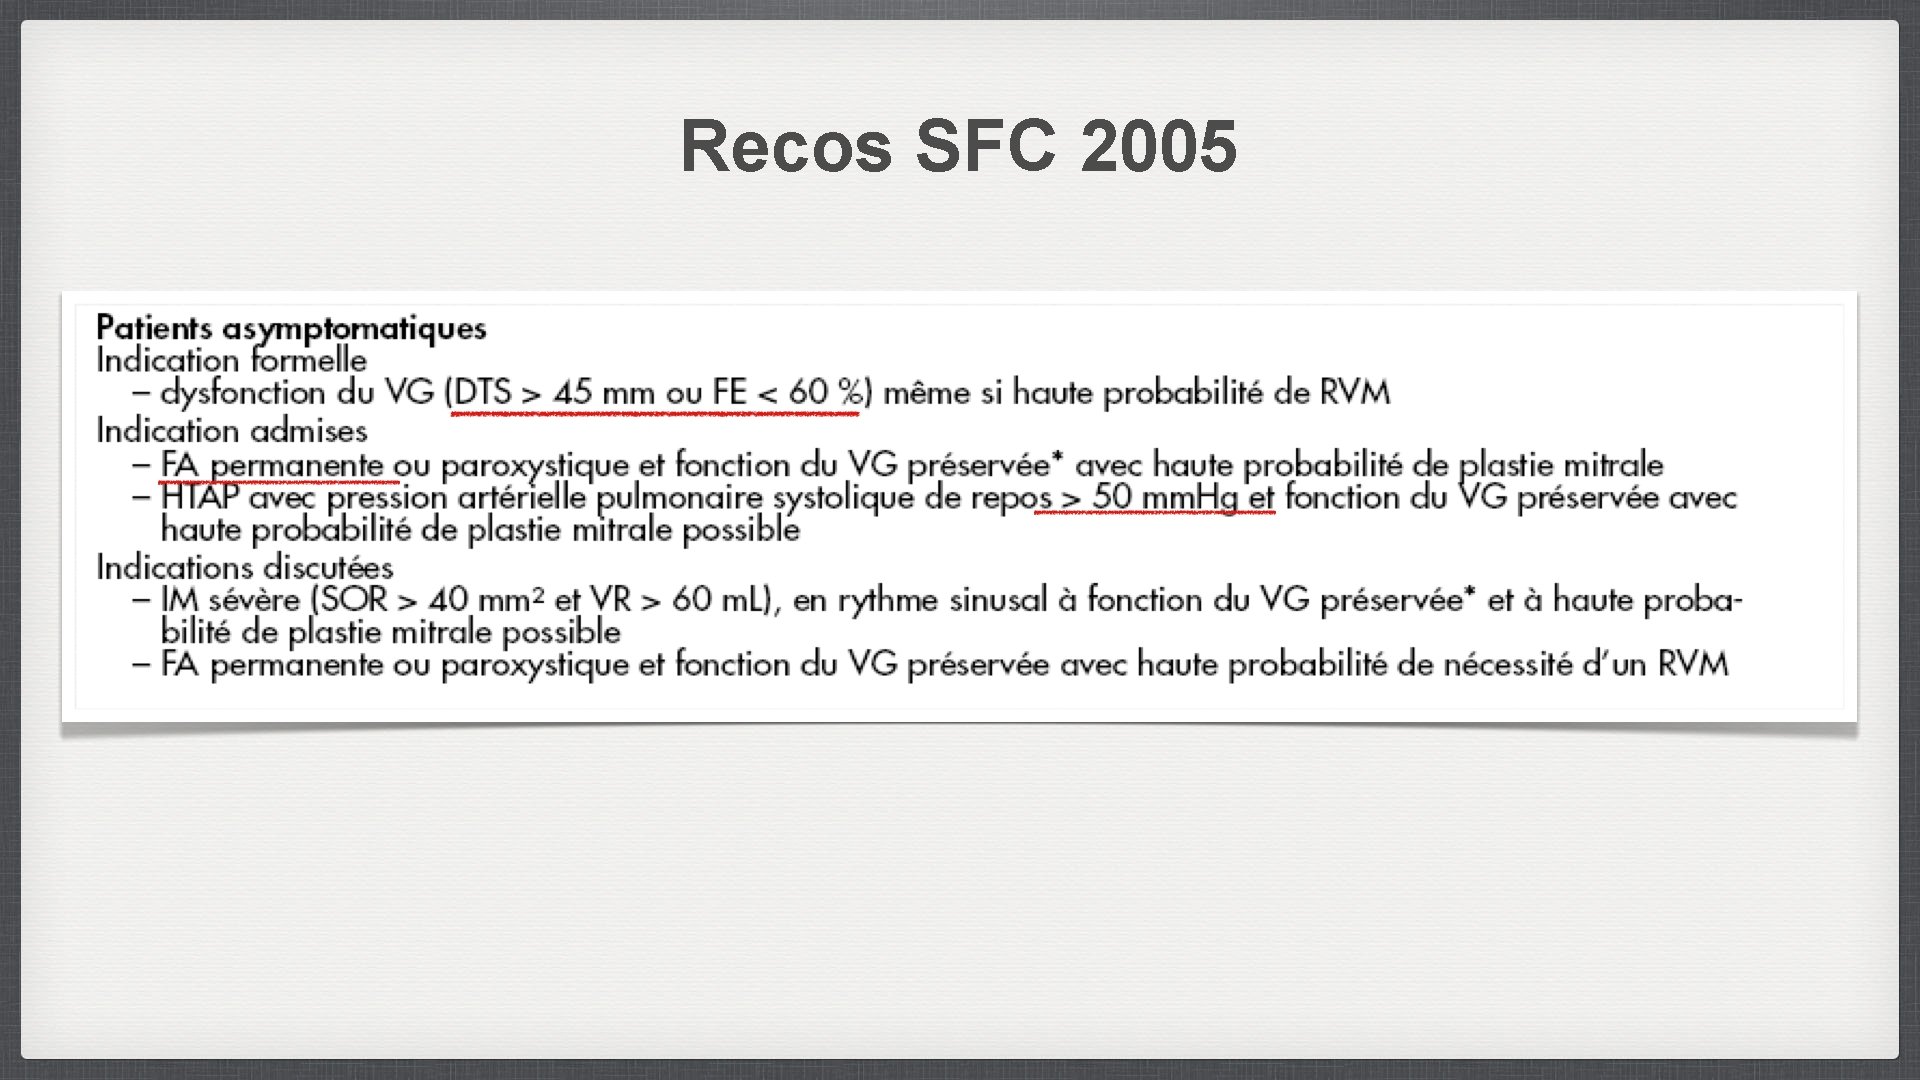 Recos SFC 2005 